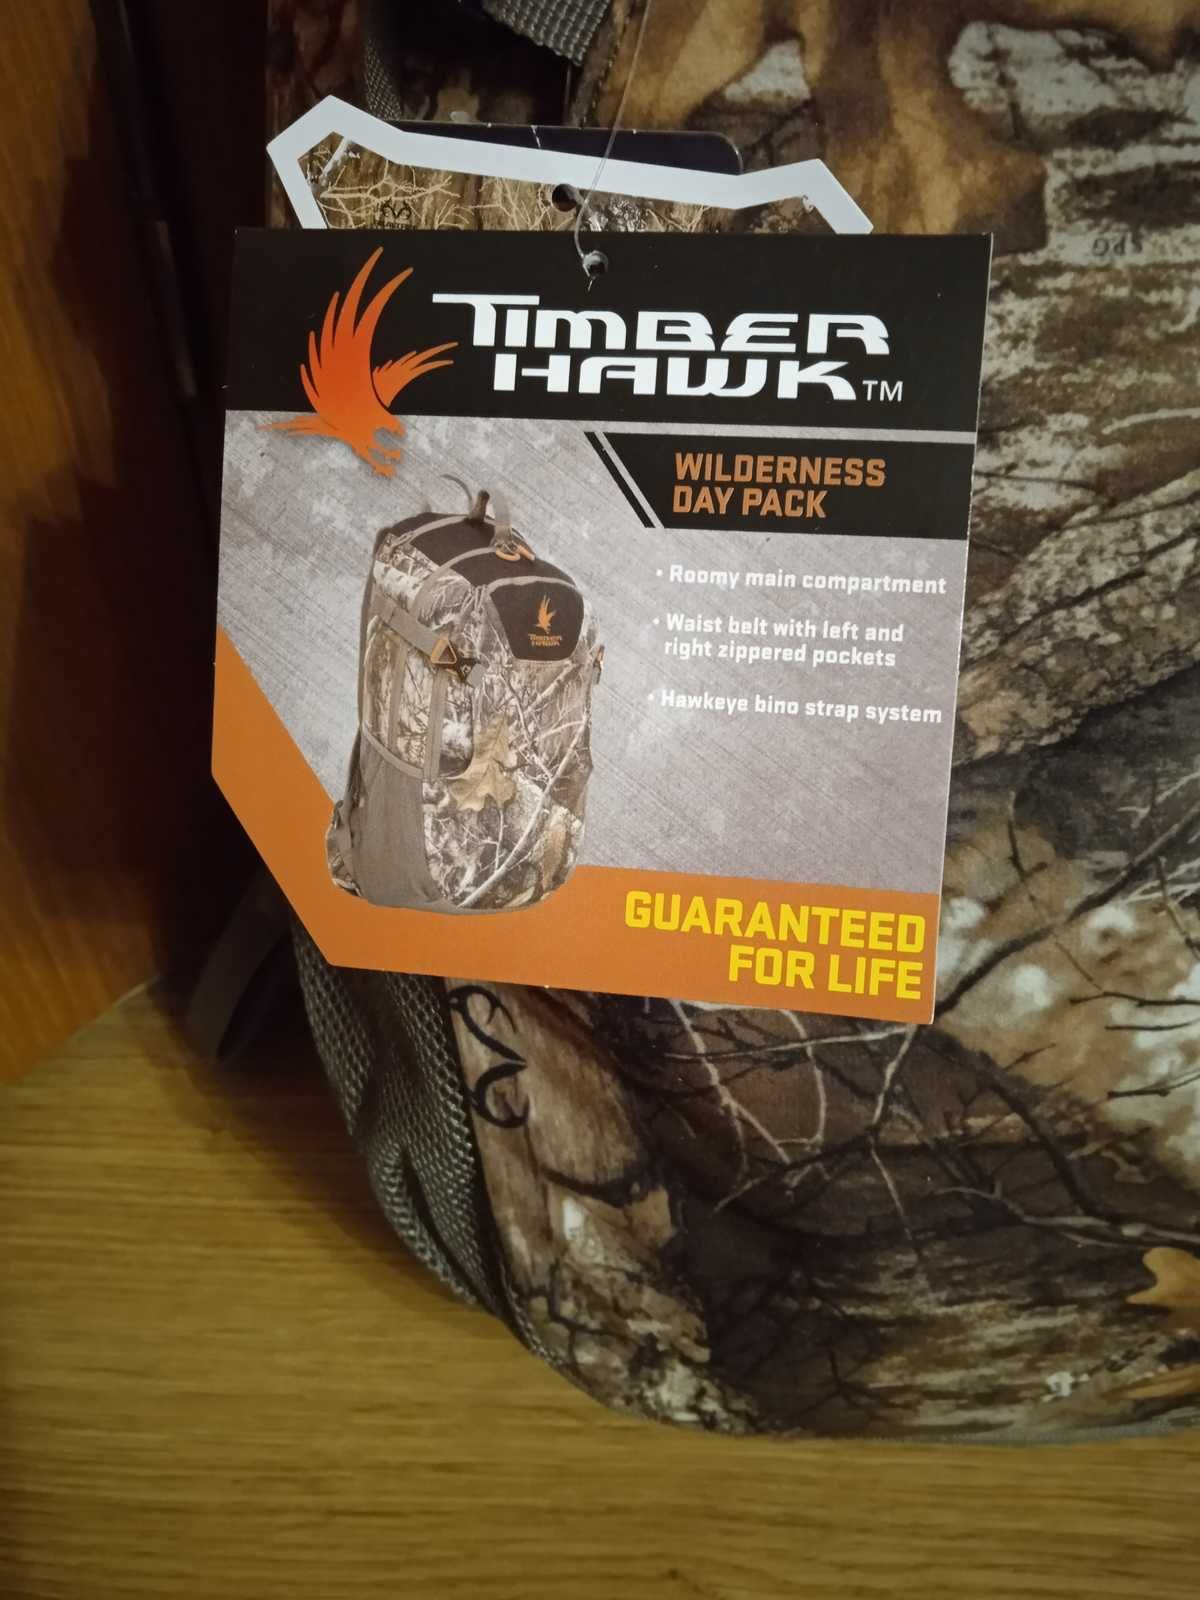 Профессиональный охотничий рюкзак, мисливський рюкзак Timberhawk.З США